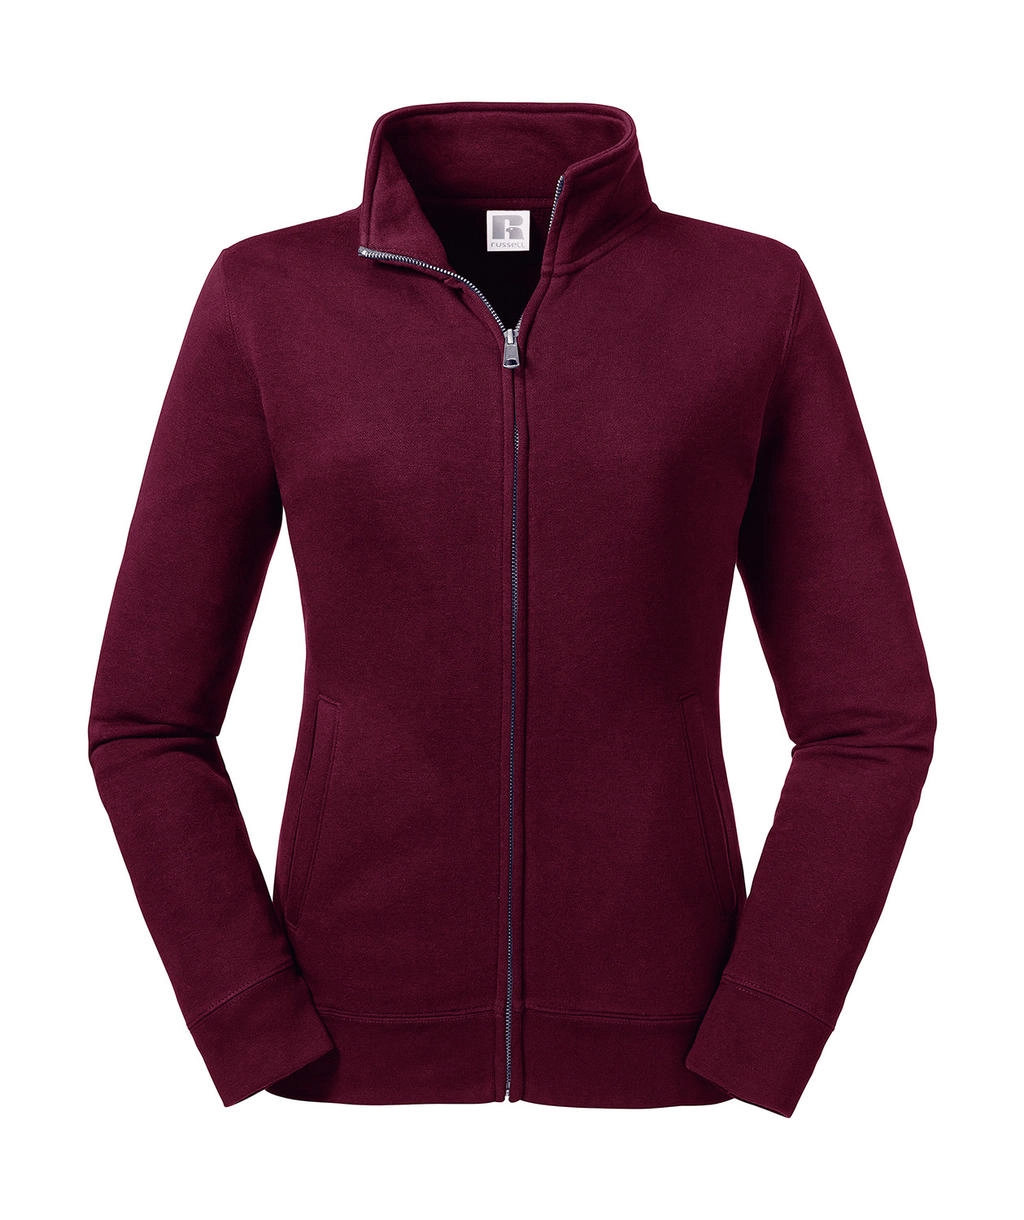 Ladies` Authentic Sweat Jacket zum Besticken und Bedrucken in der Farbe Burgundy mit Ihren Logo, Schriftzug oder Motiv.